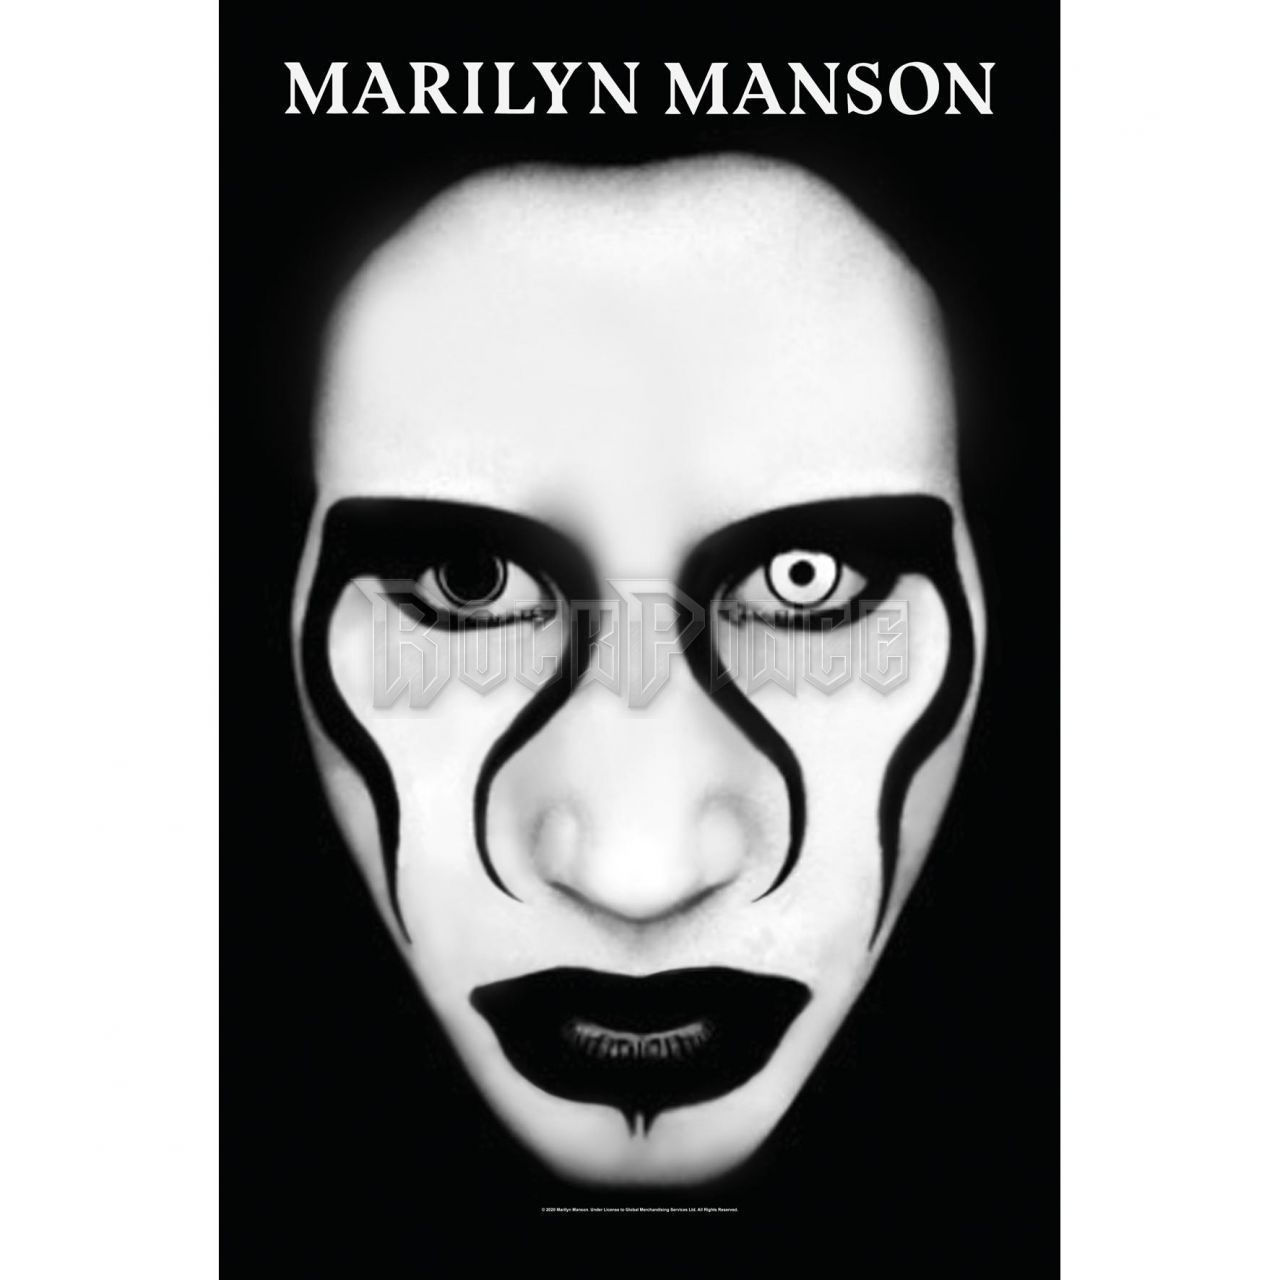 Marilyn Manson - Defianf Face - Textil poszter / Zászló - TP243